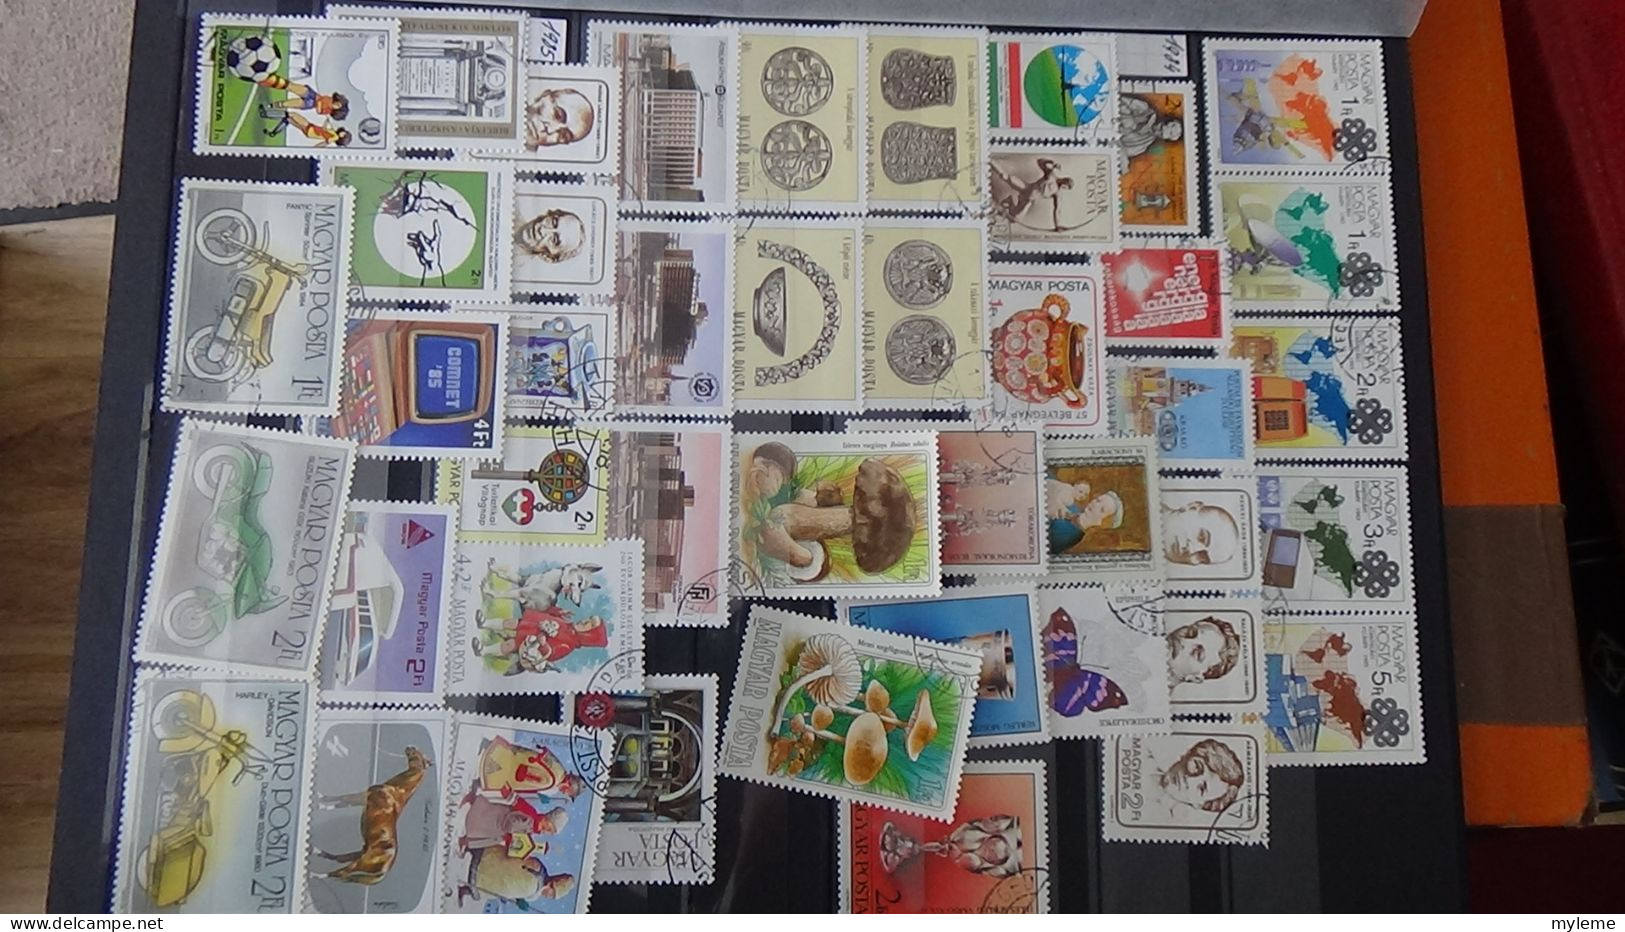 BF37 Ensemble de timbres de divers pays + France N° 206 + 207 **  Cote 430 euros